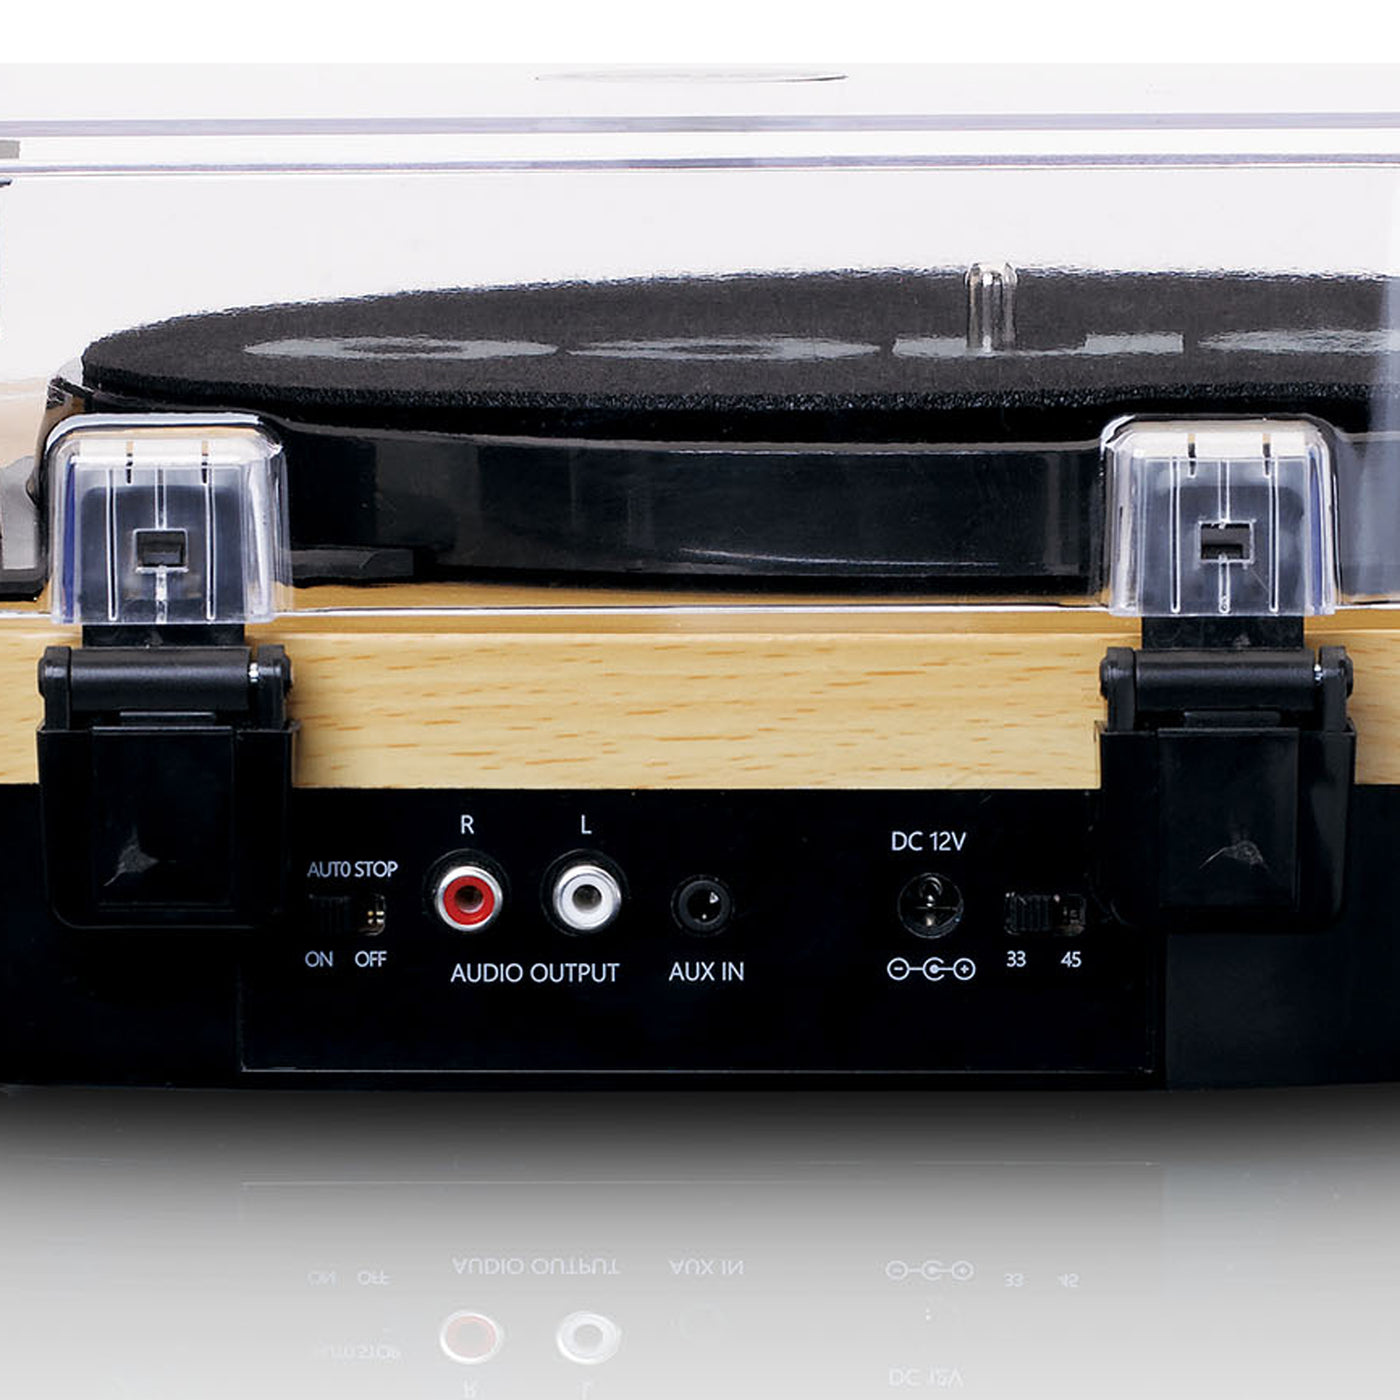 LENCO LS-40WD - Platenspeler met ingebouwde speakers - Hout